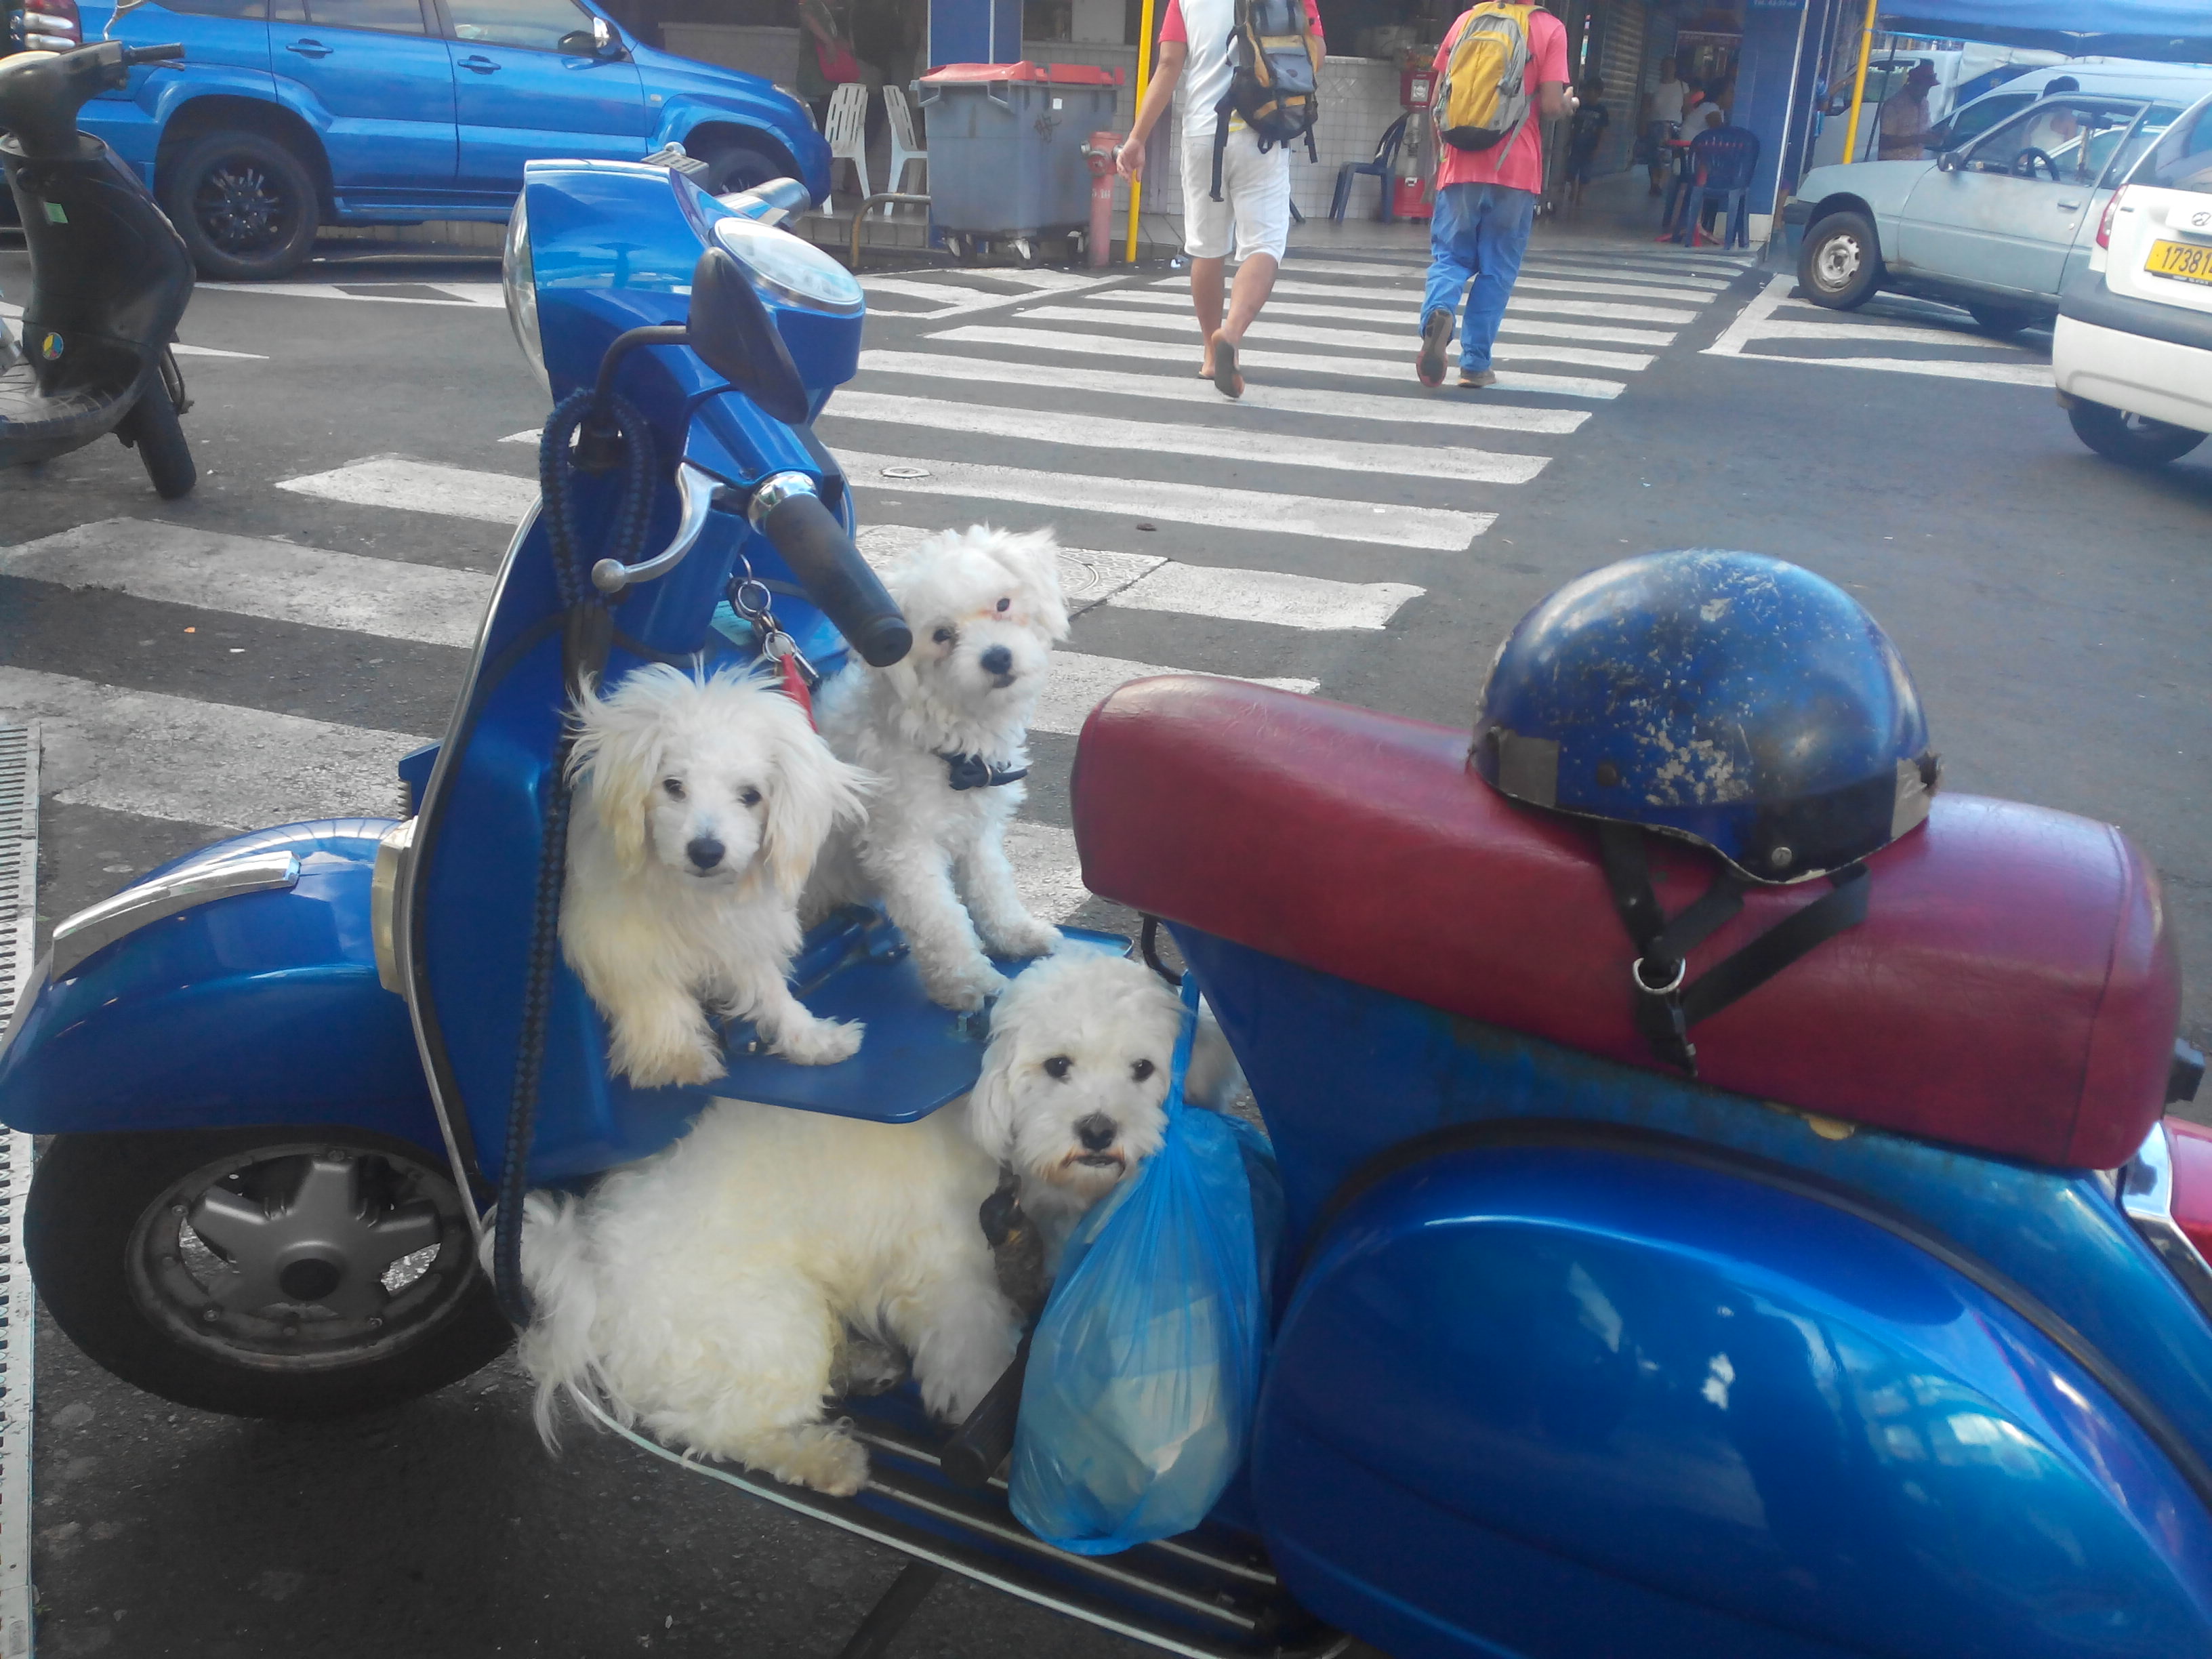 Insolite: aux abords du marché de Papeete, des petits chiens en vespa